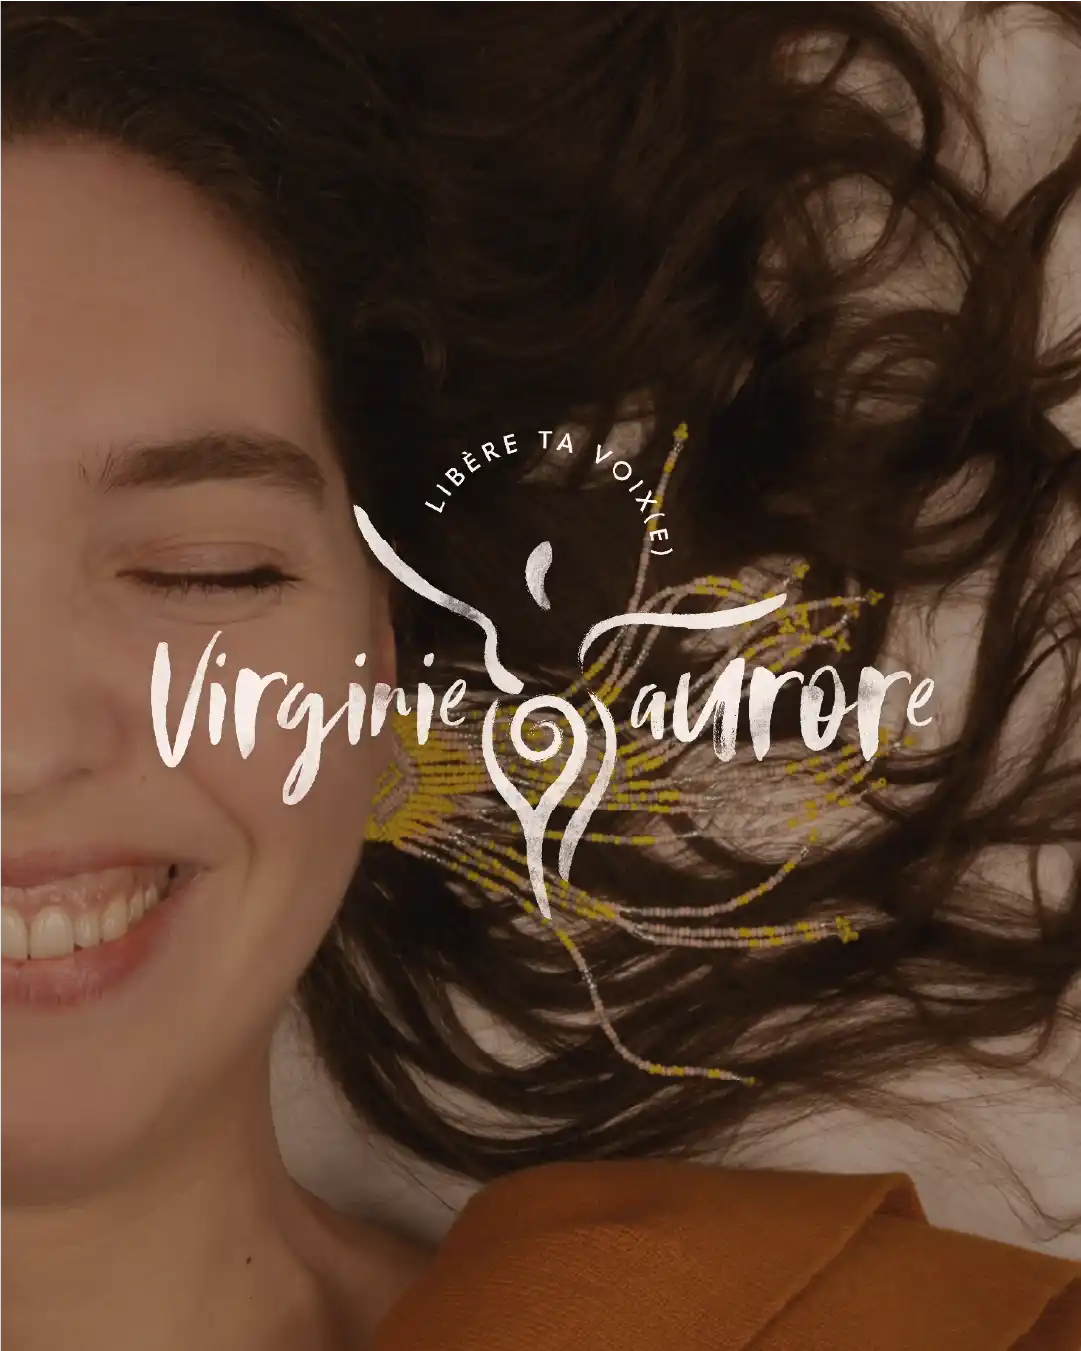 Le feed Instagram de la marque personnelle de Virginie Aurore, auteur-compositrice-interprète de chants médecines.